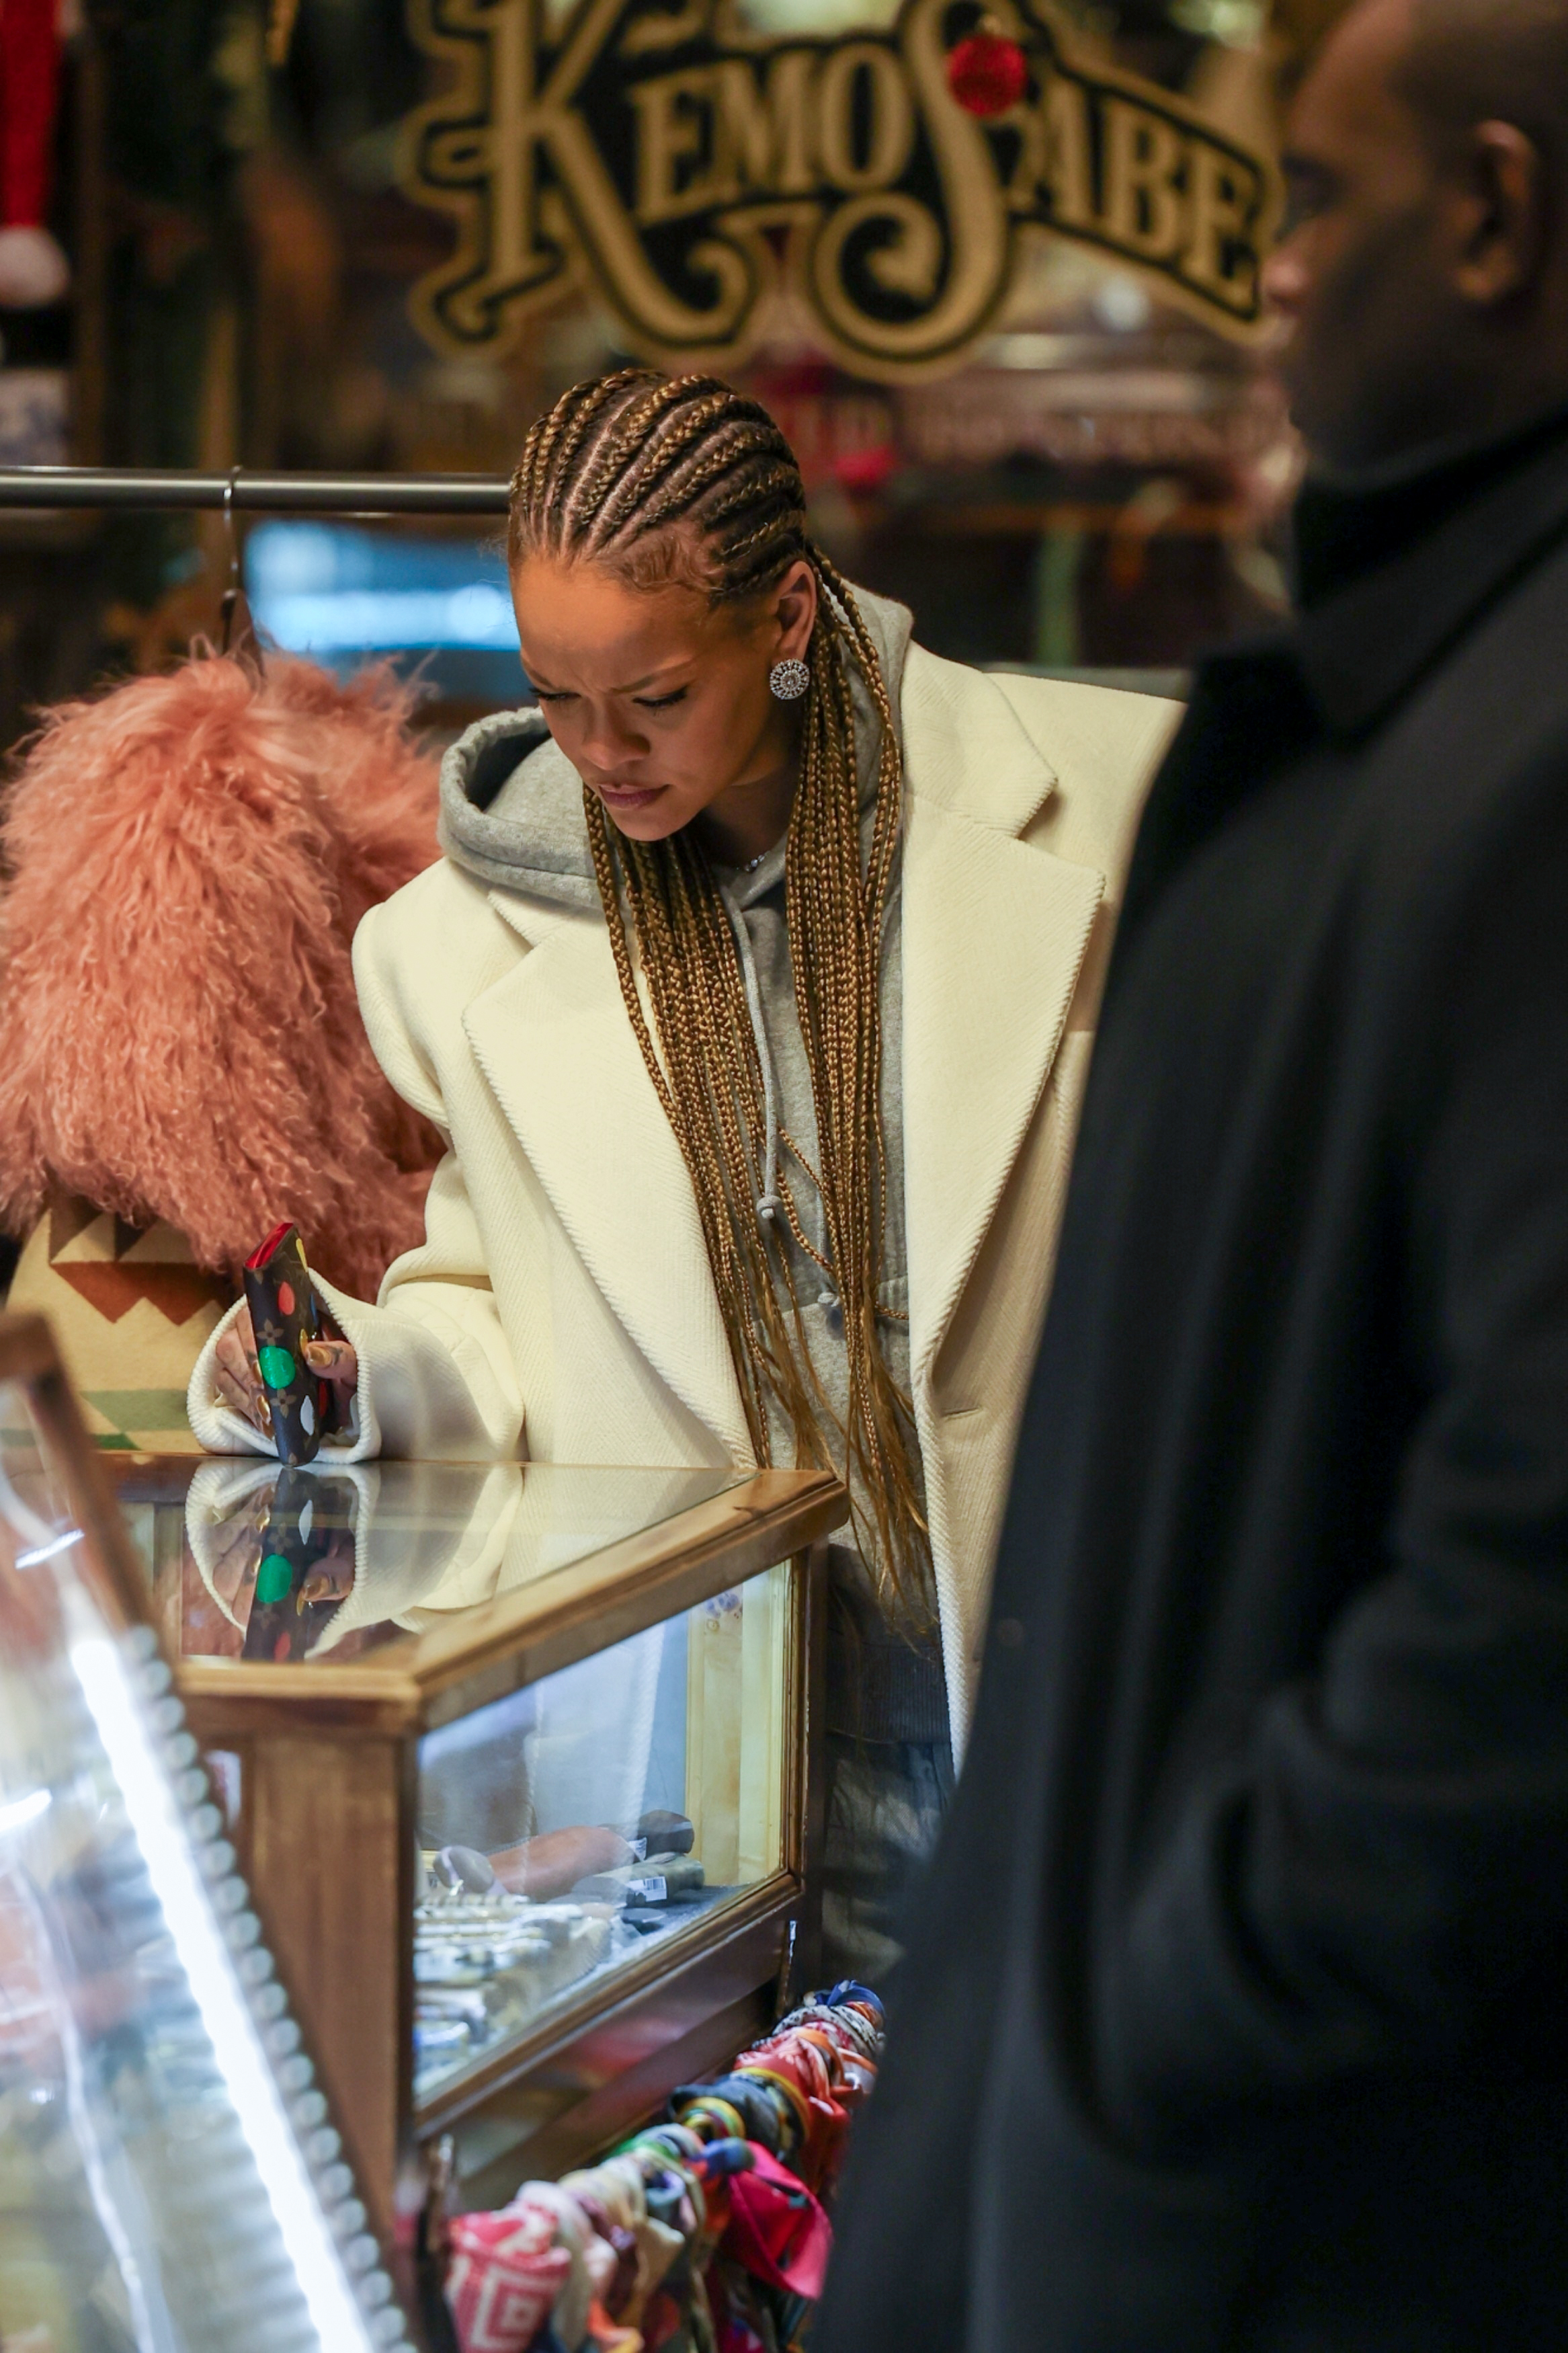 Rihanna shopping at Kemo Sabe